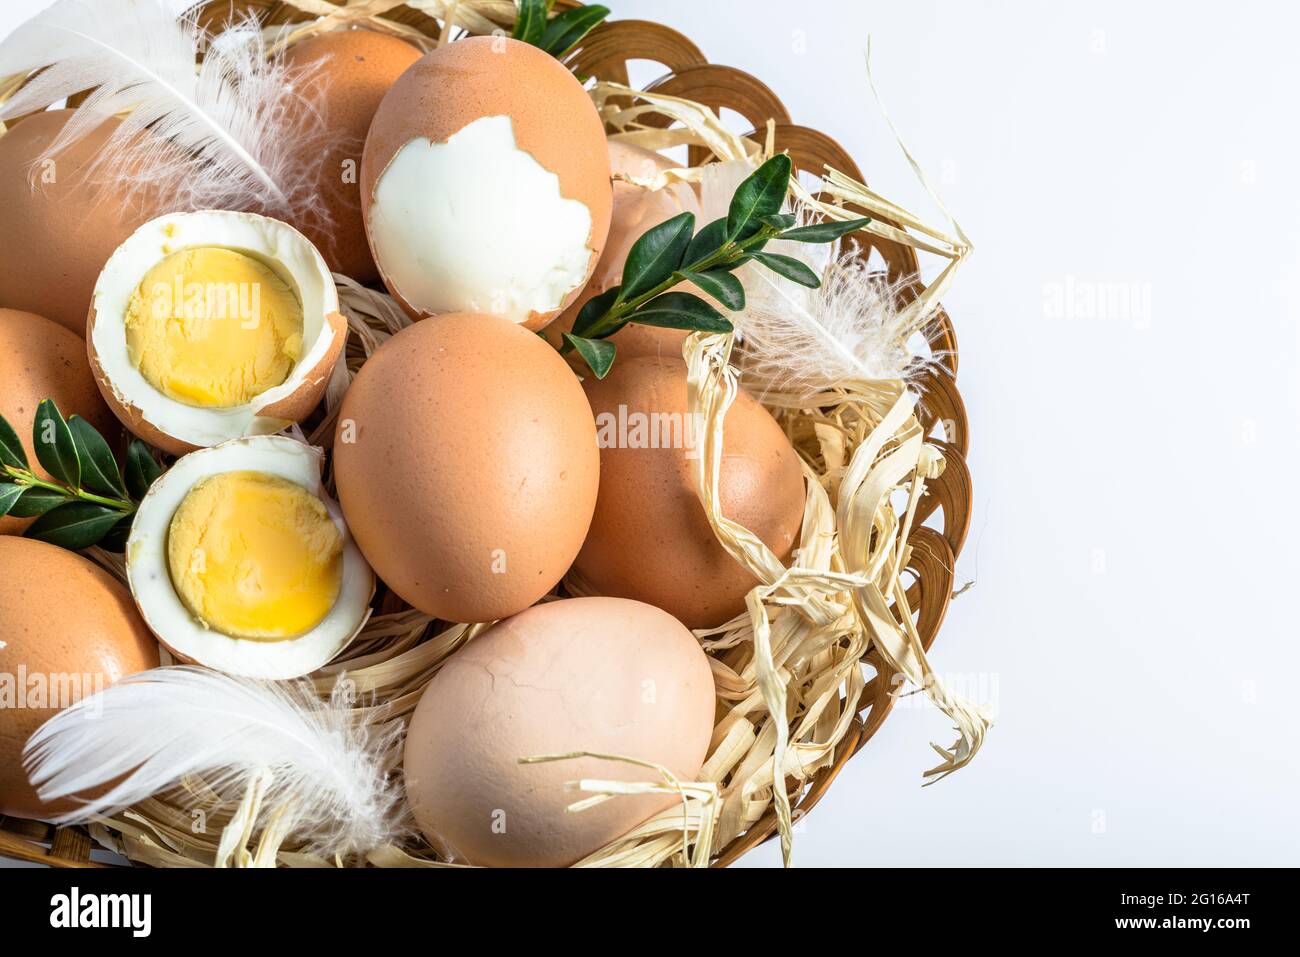 Œufs bio dans le panier et œuf dur avec jaune, concept alimentaire de saison de pâques Banque D'Images